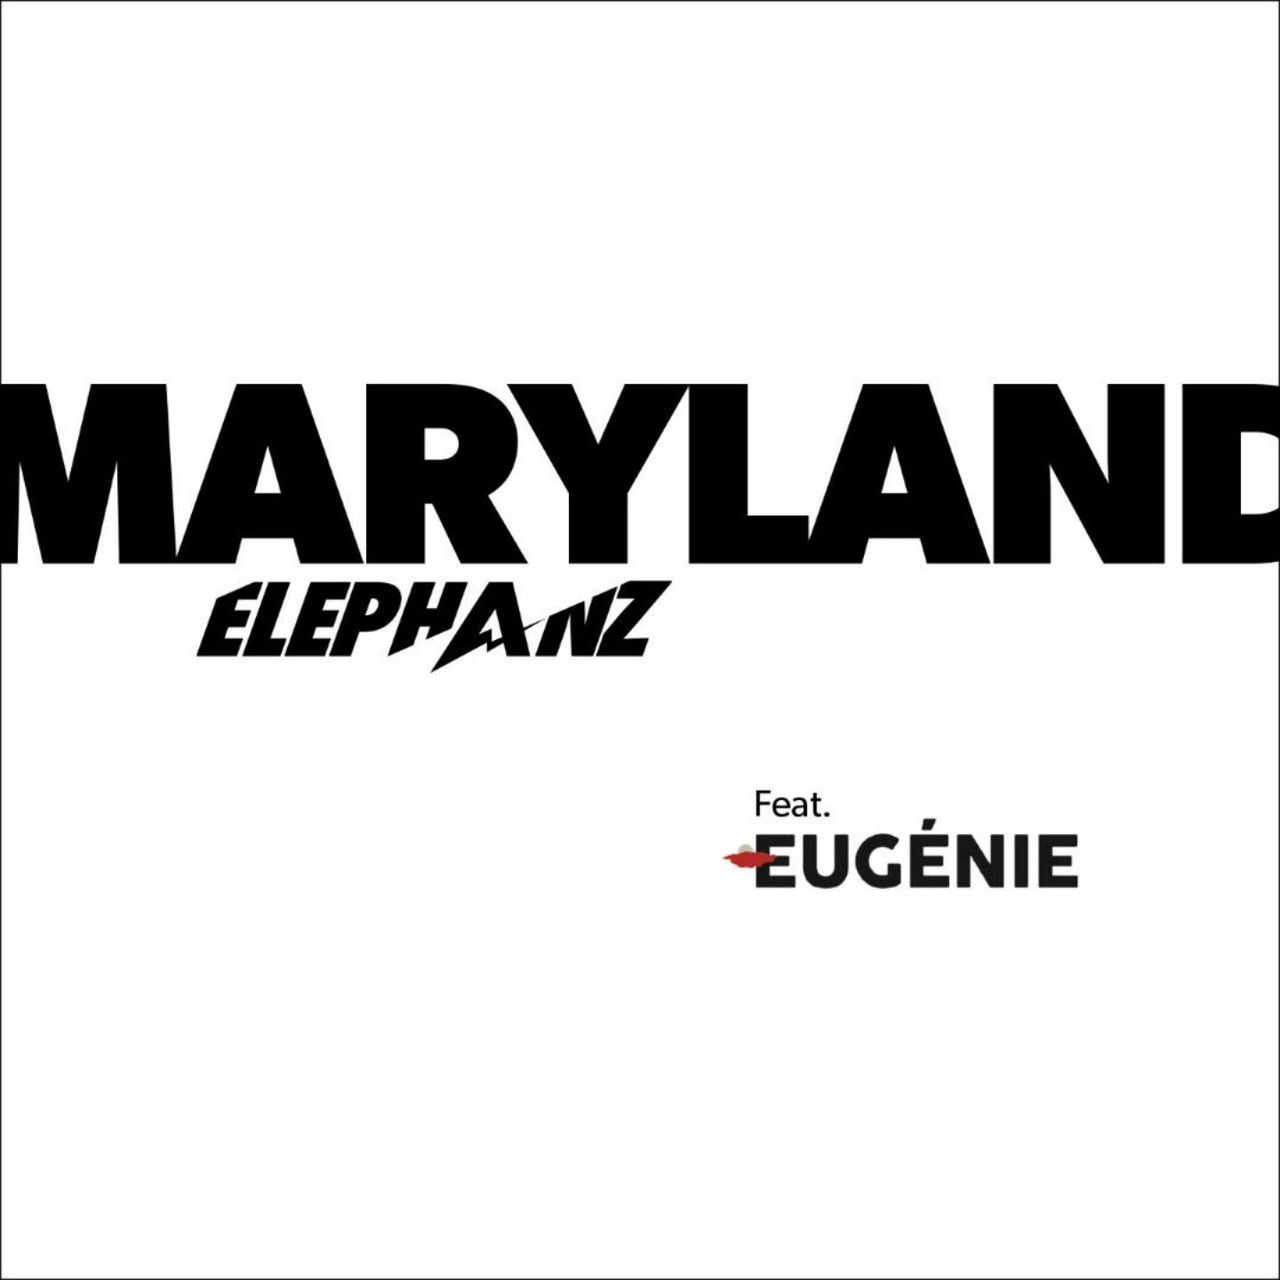 Elephanz featuring Eugénie — Maryland cover artwork